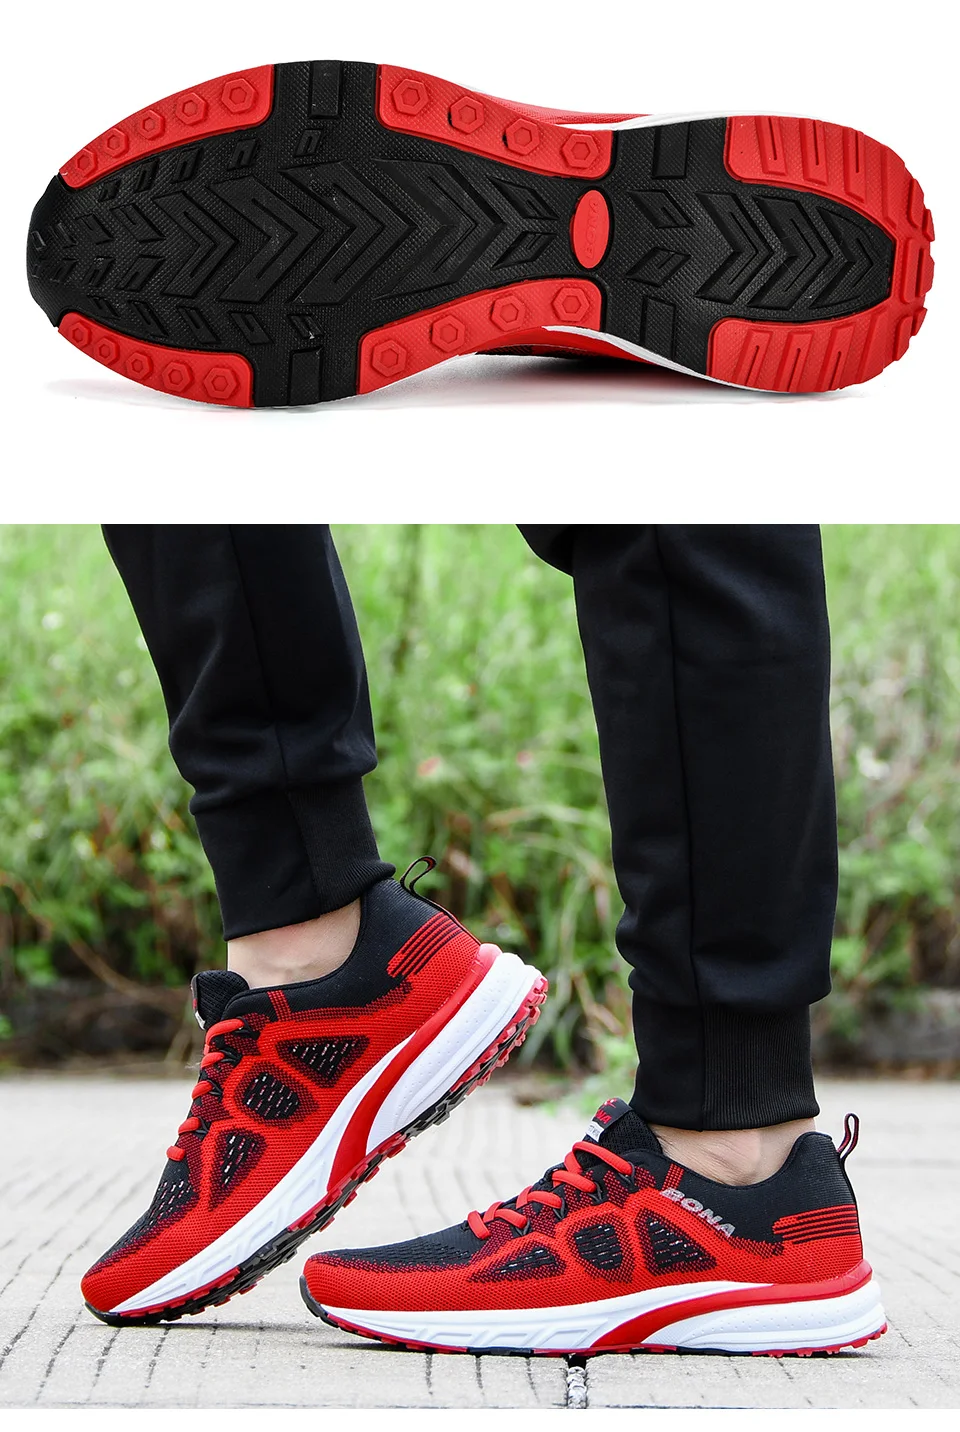 BONA/ кроссовки; Мужская обувь; спортивные кроссовки из сетчатого материала; Легкие баскетбольные кроссовки; Femme; обувь для бега; уличная спортивная обувь; мужская обувь